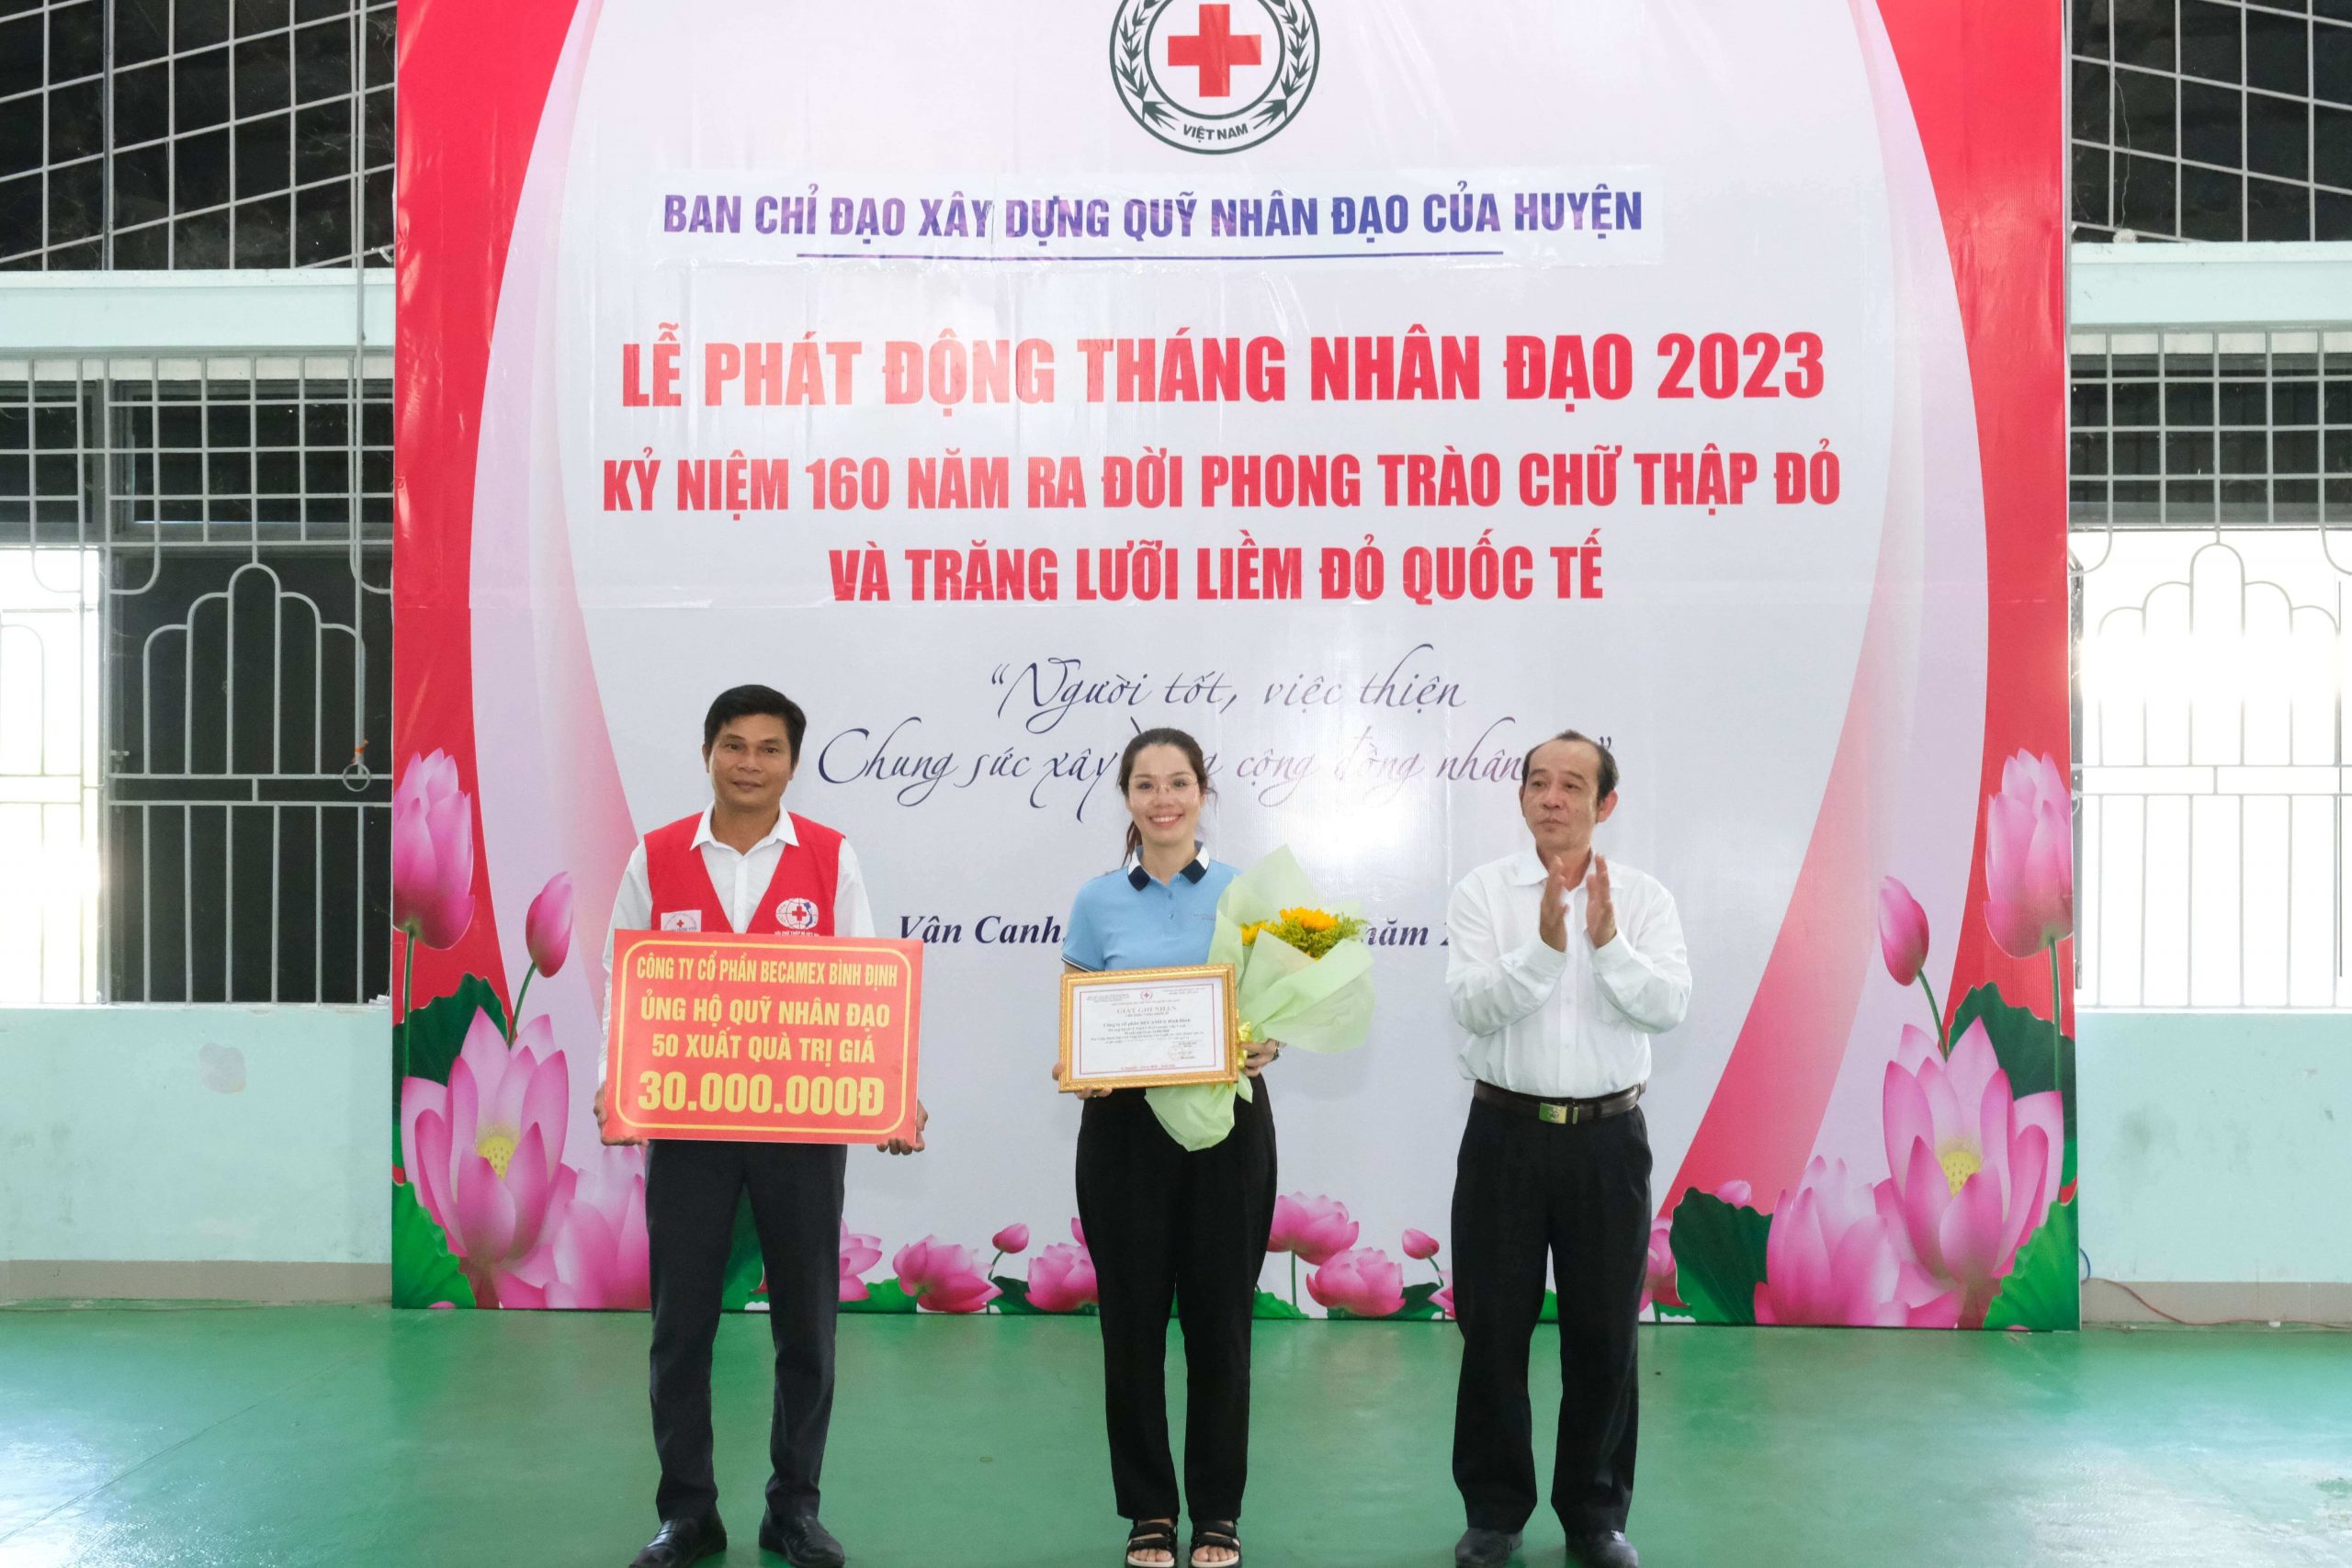 [19/05/2023] Ủng hộ xây dựng “Quỹ nhân đạo” huyện Vân Canh